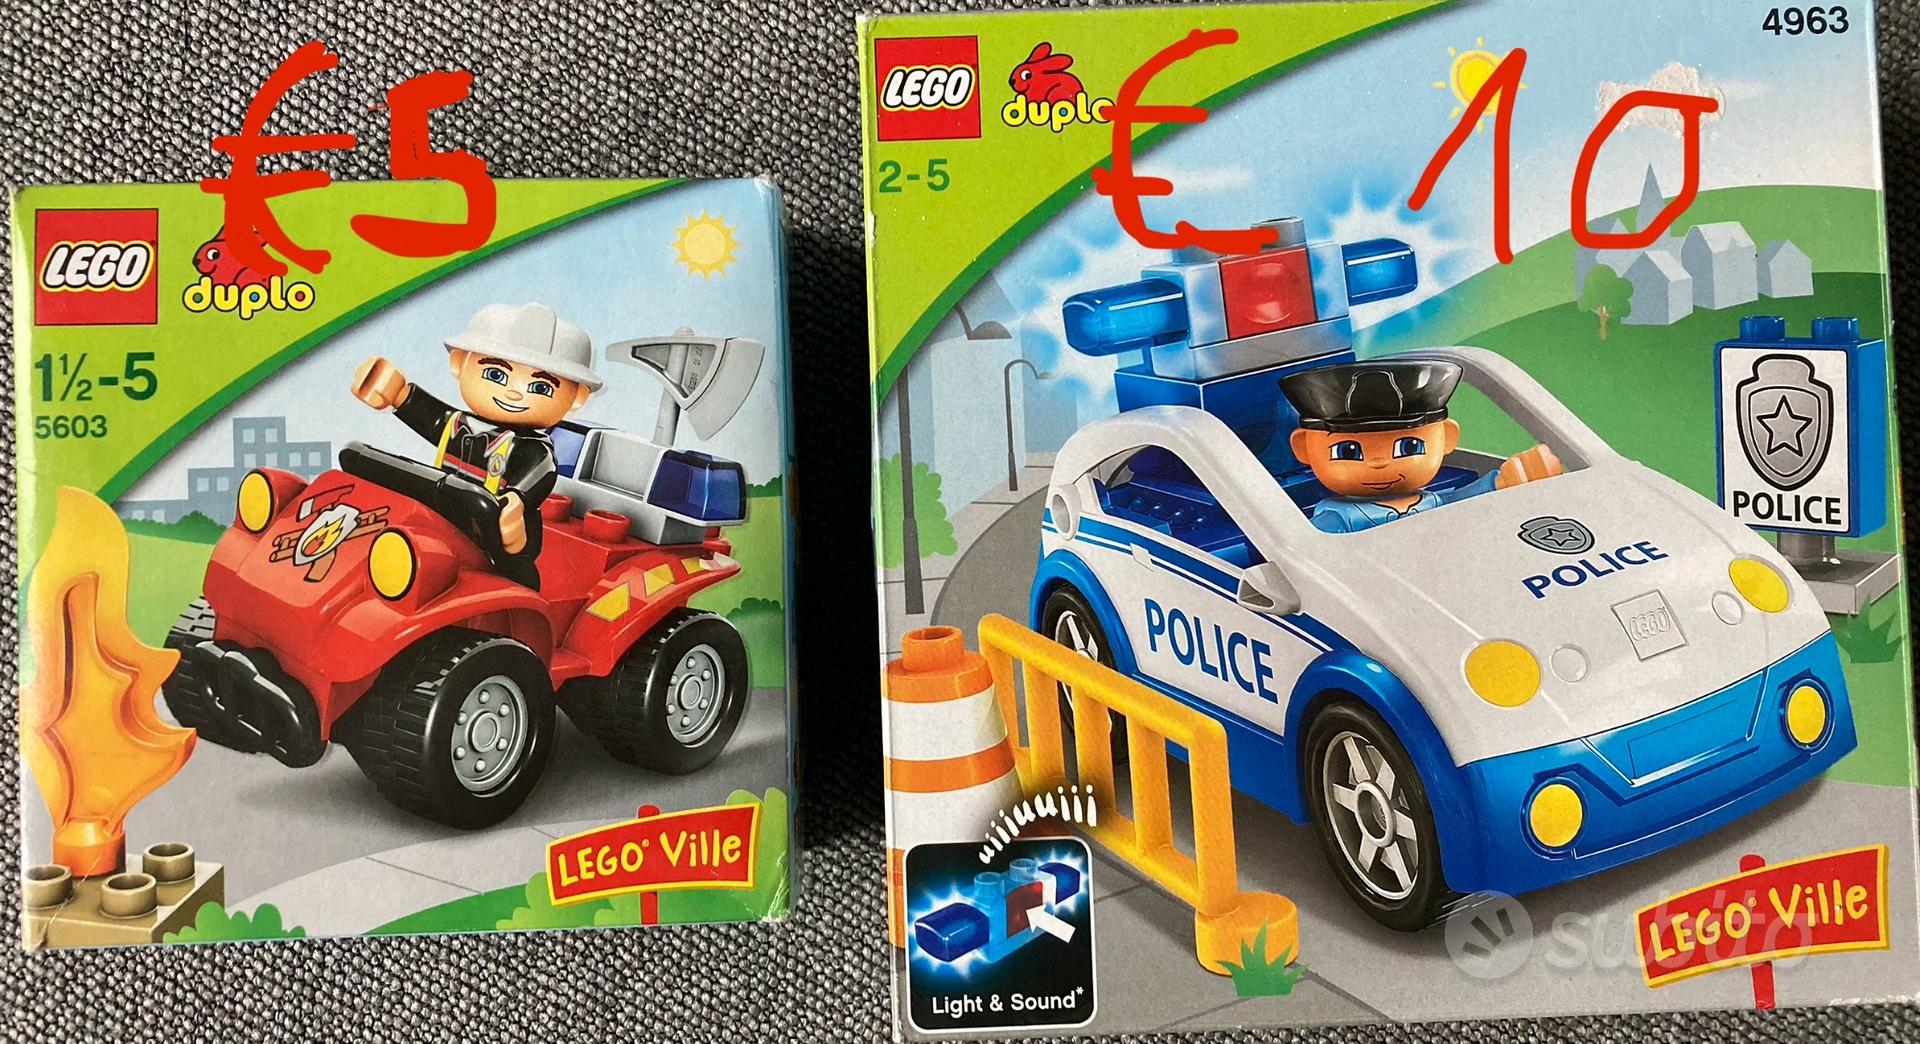 Lego DUPLO 2 - 6 anni - Tutto per i bambini In vendita a Trento